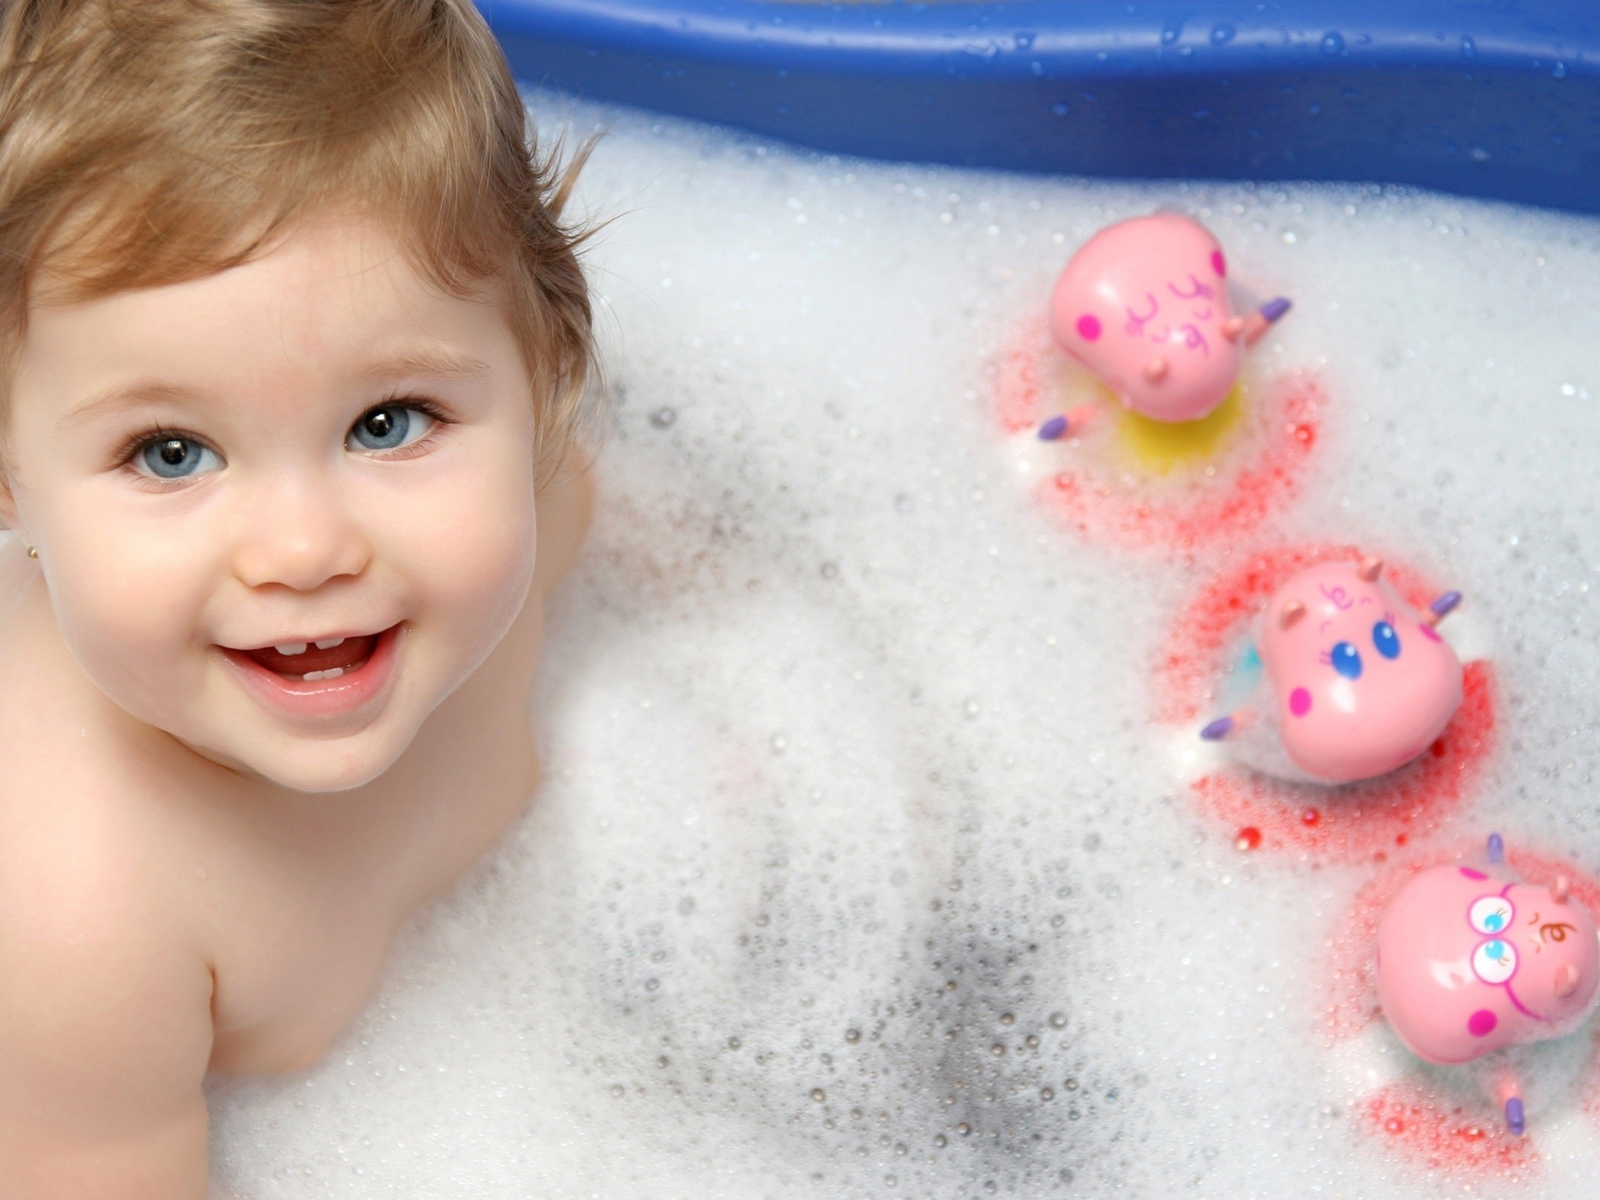 Картинка: Маленькая девочка, ребёнок, купание, ванна, пена, игрушки, радость, улыбка